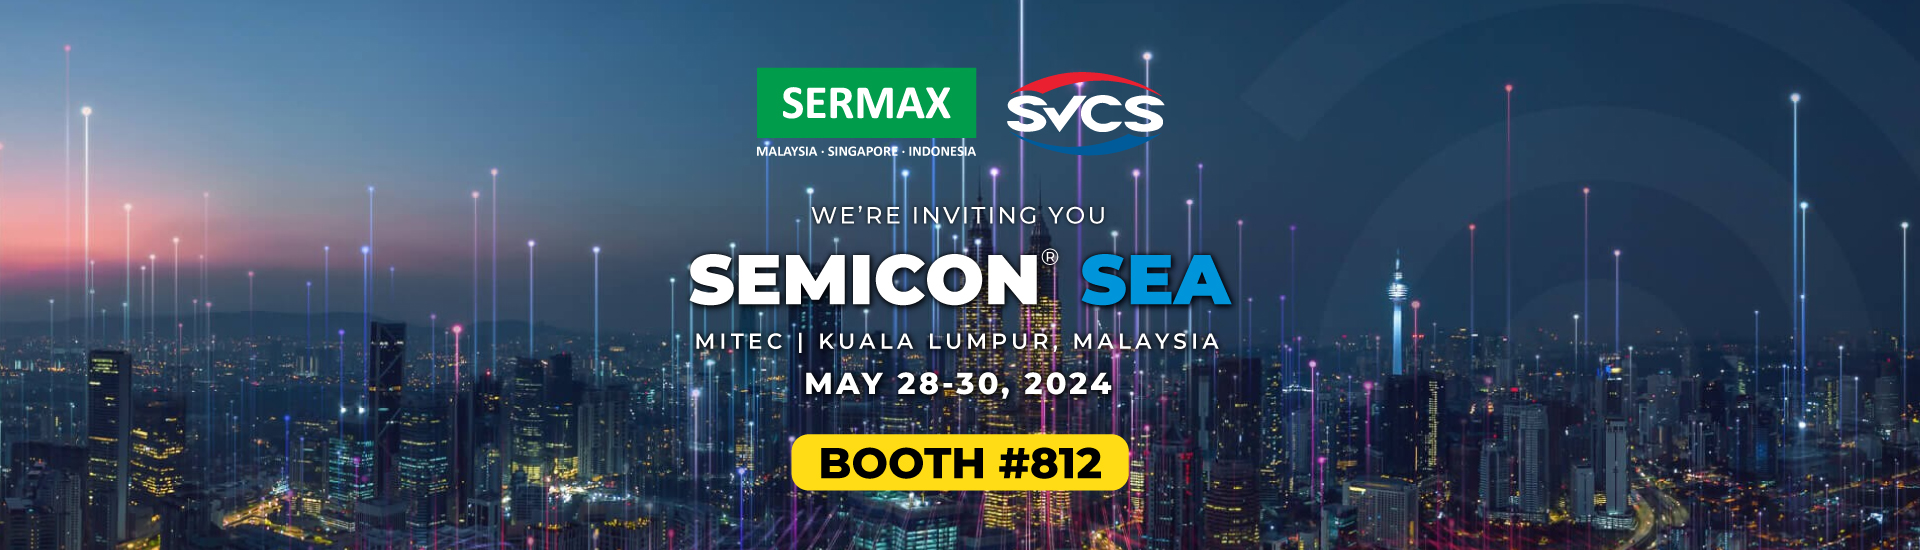 Semicon 2024 Malaysia Exhibition